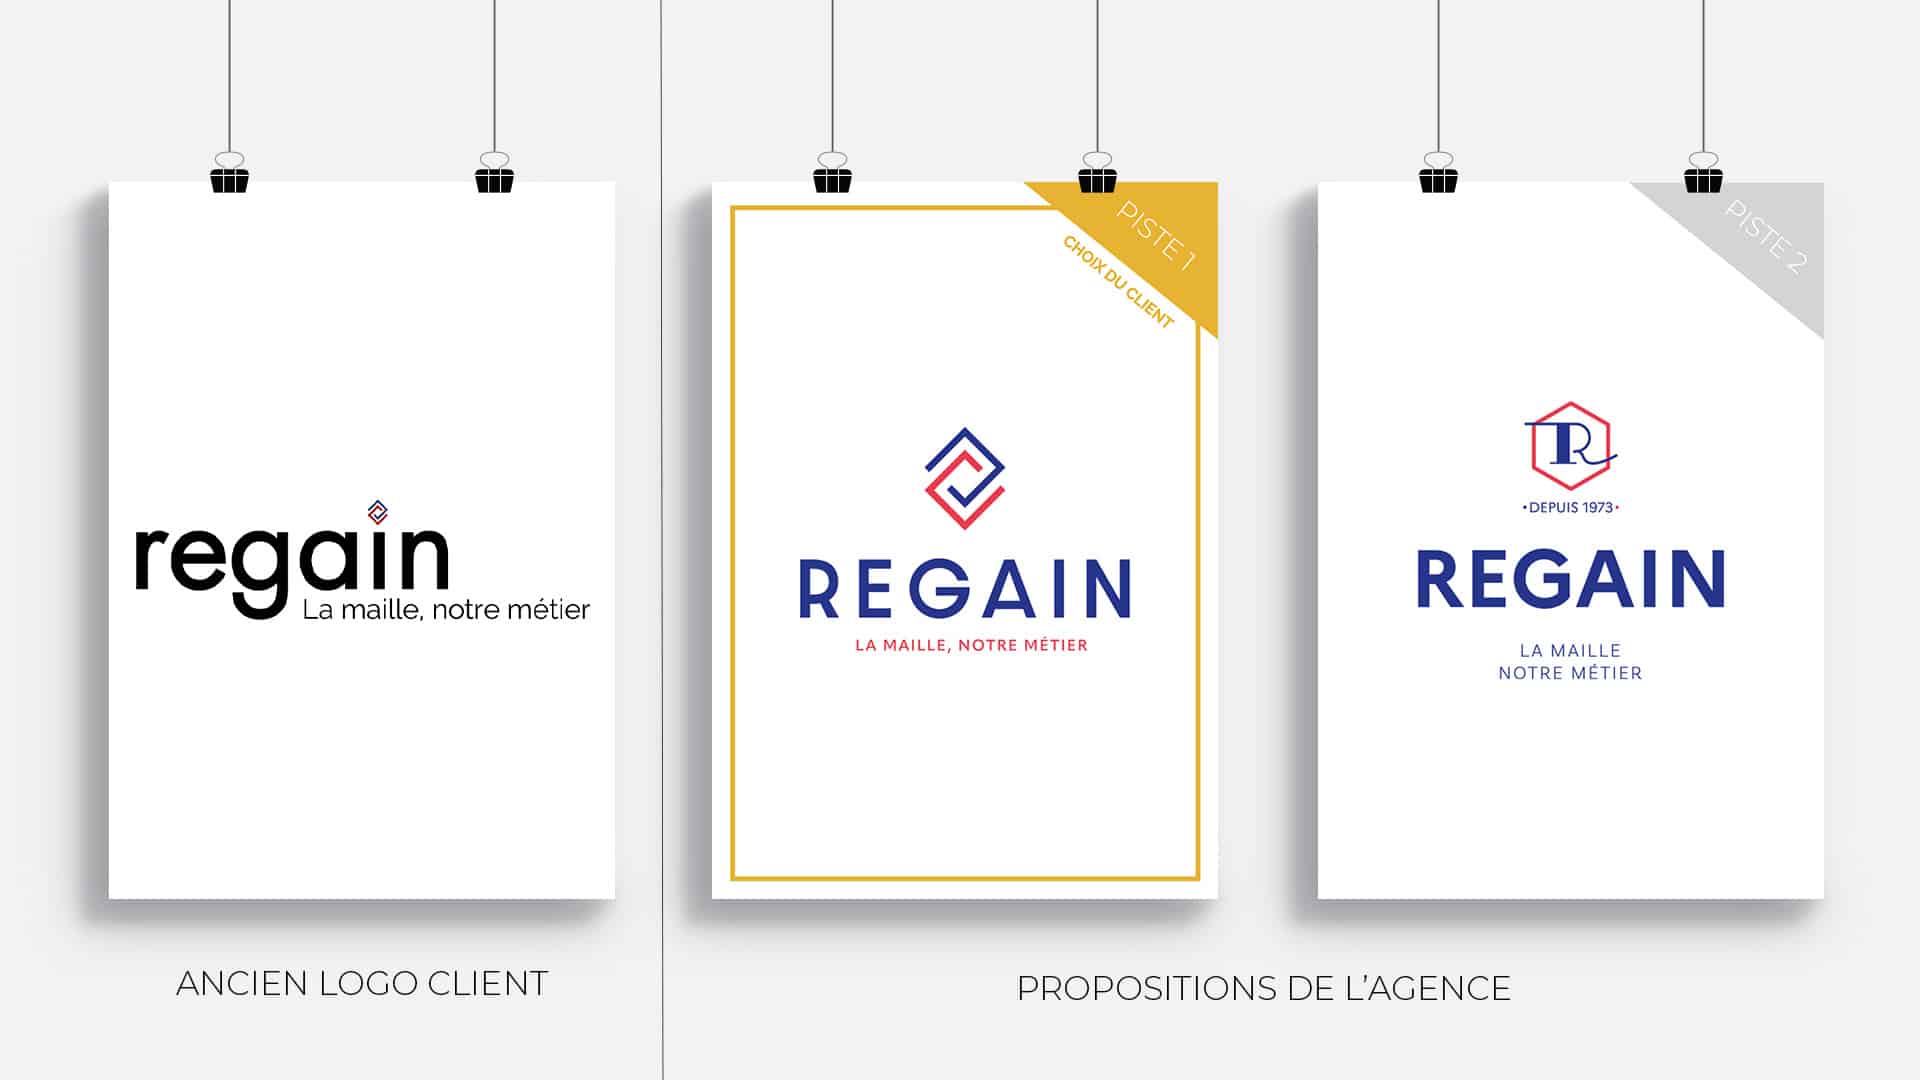 Mise en avant des deux propositions de logotypes de l'agence pour Regain suite à la création d'identité visuelle par rapport à l'ancien logotype de la marque.